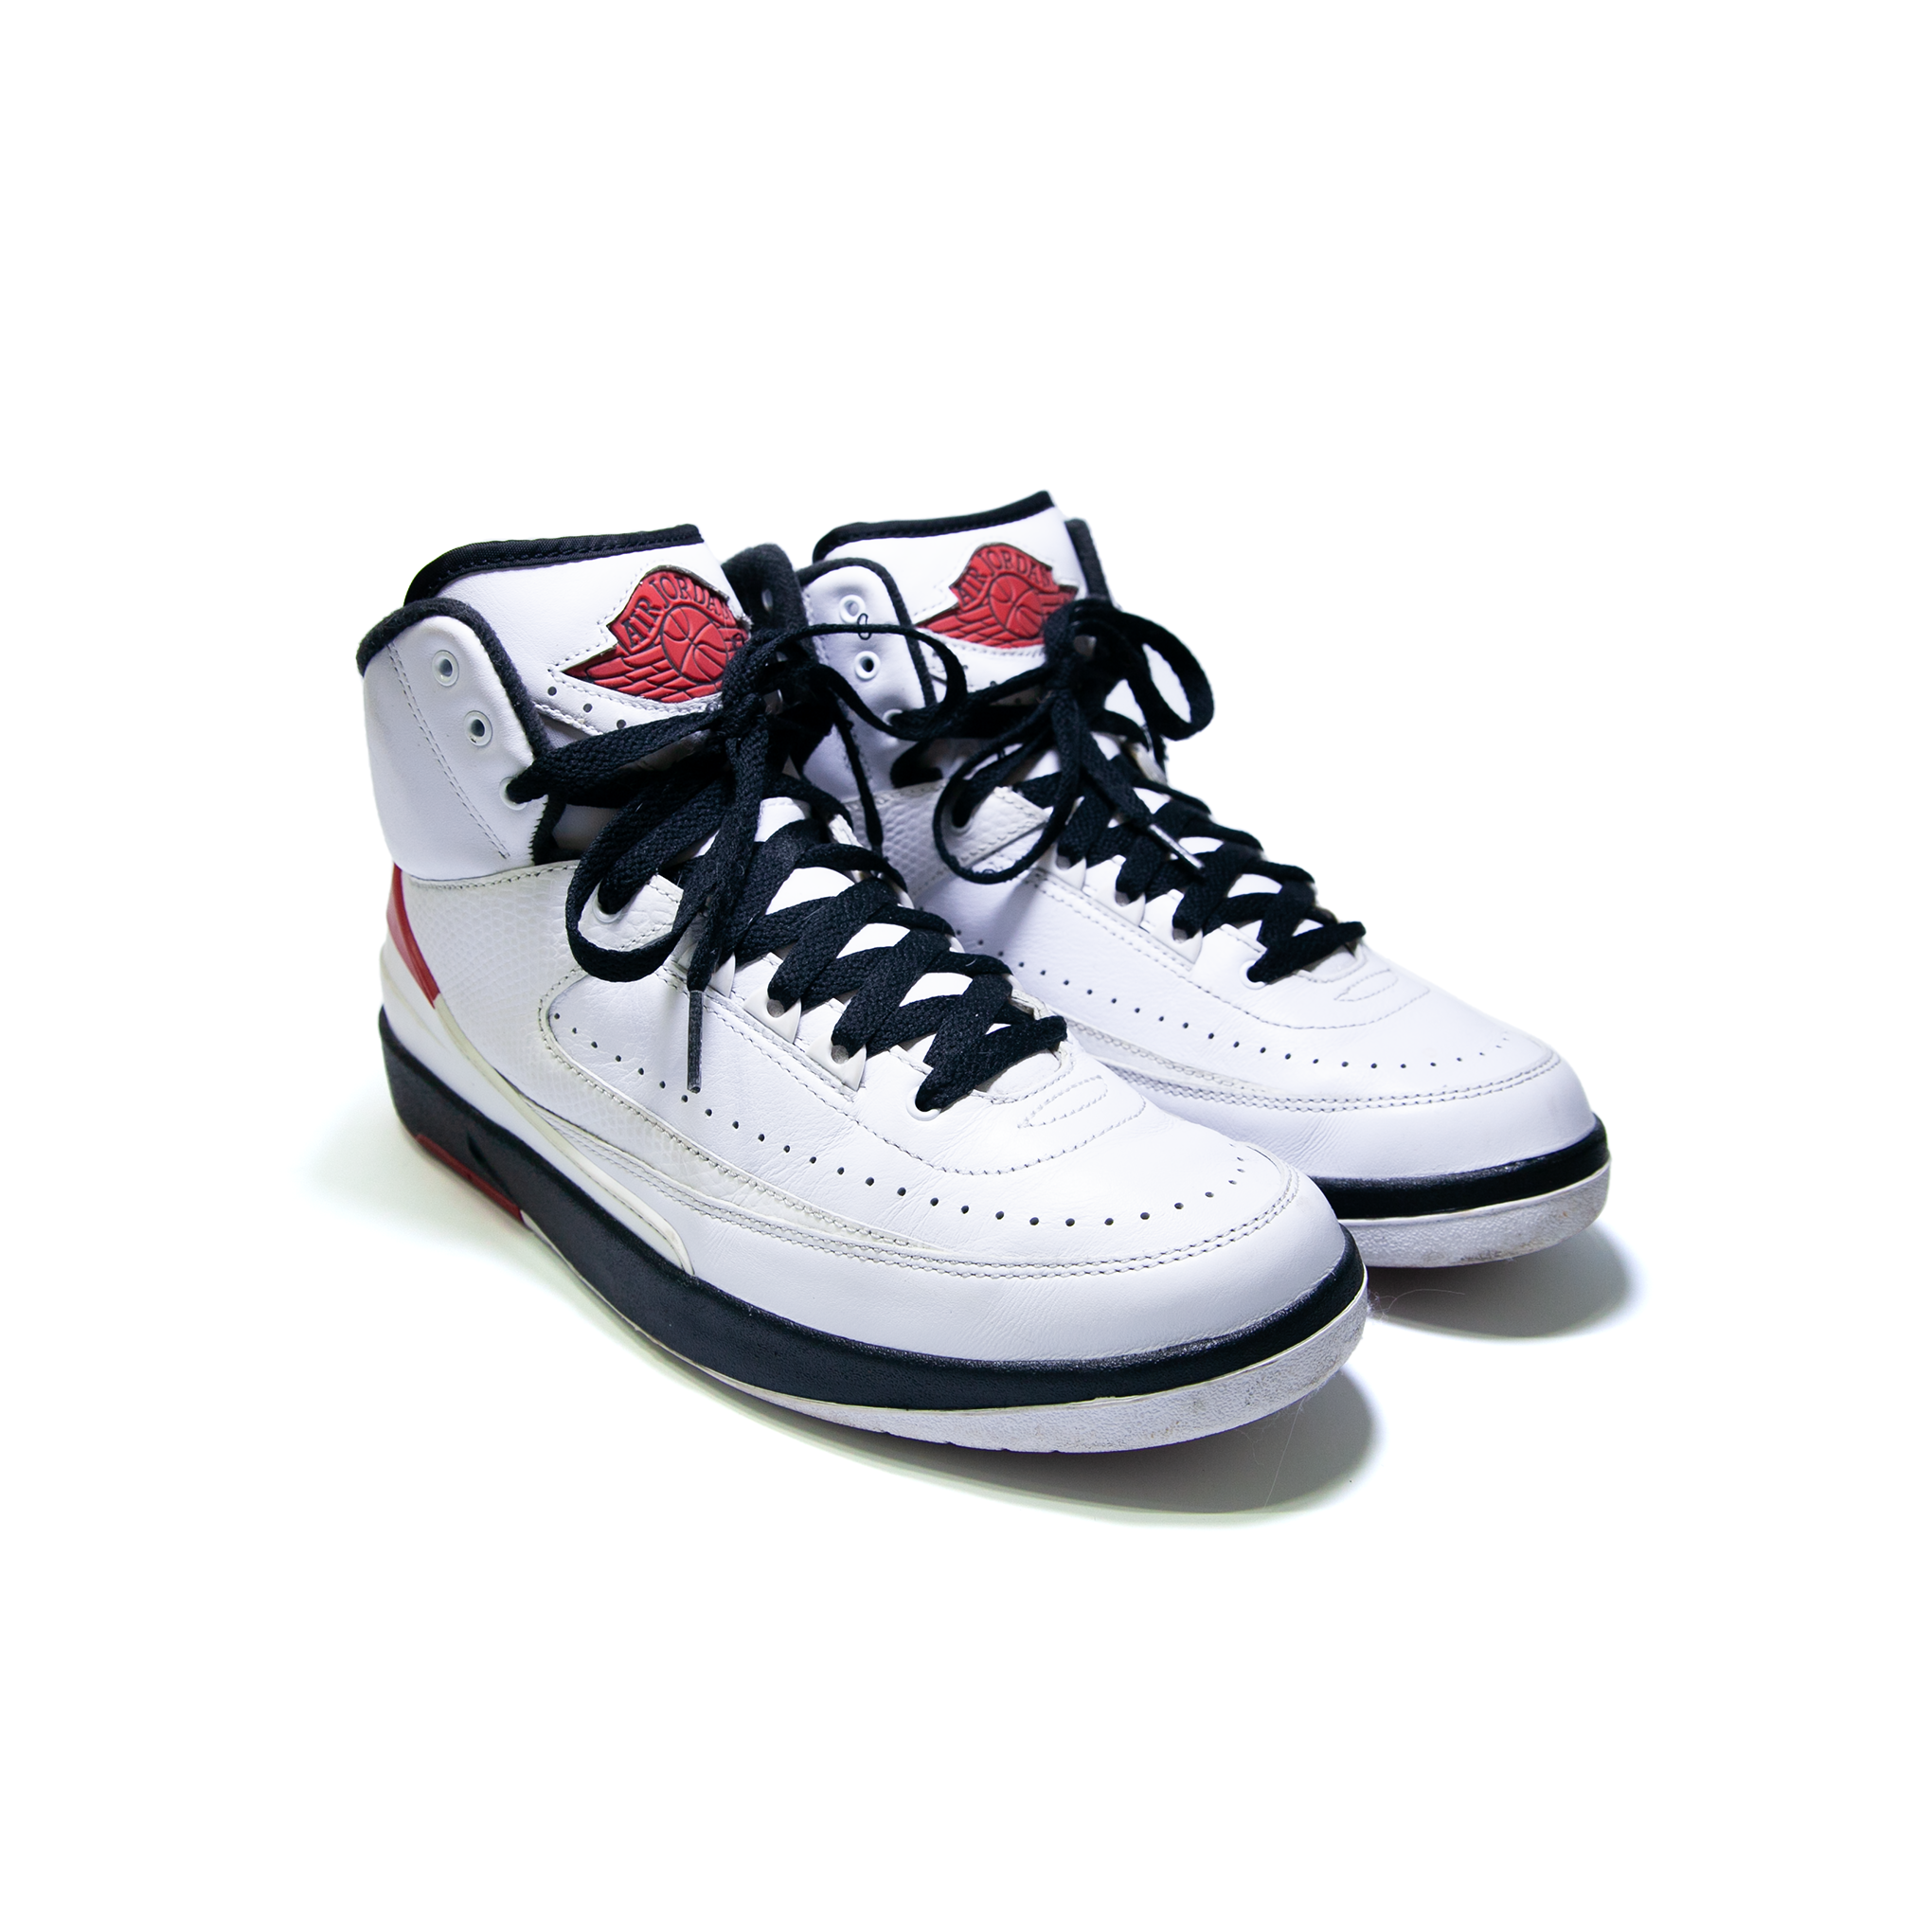 Nike Air Jordan 2 Retro Chicago OG [USED]